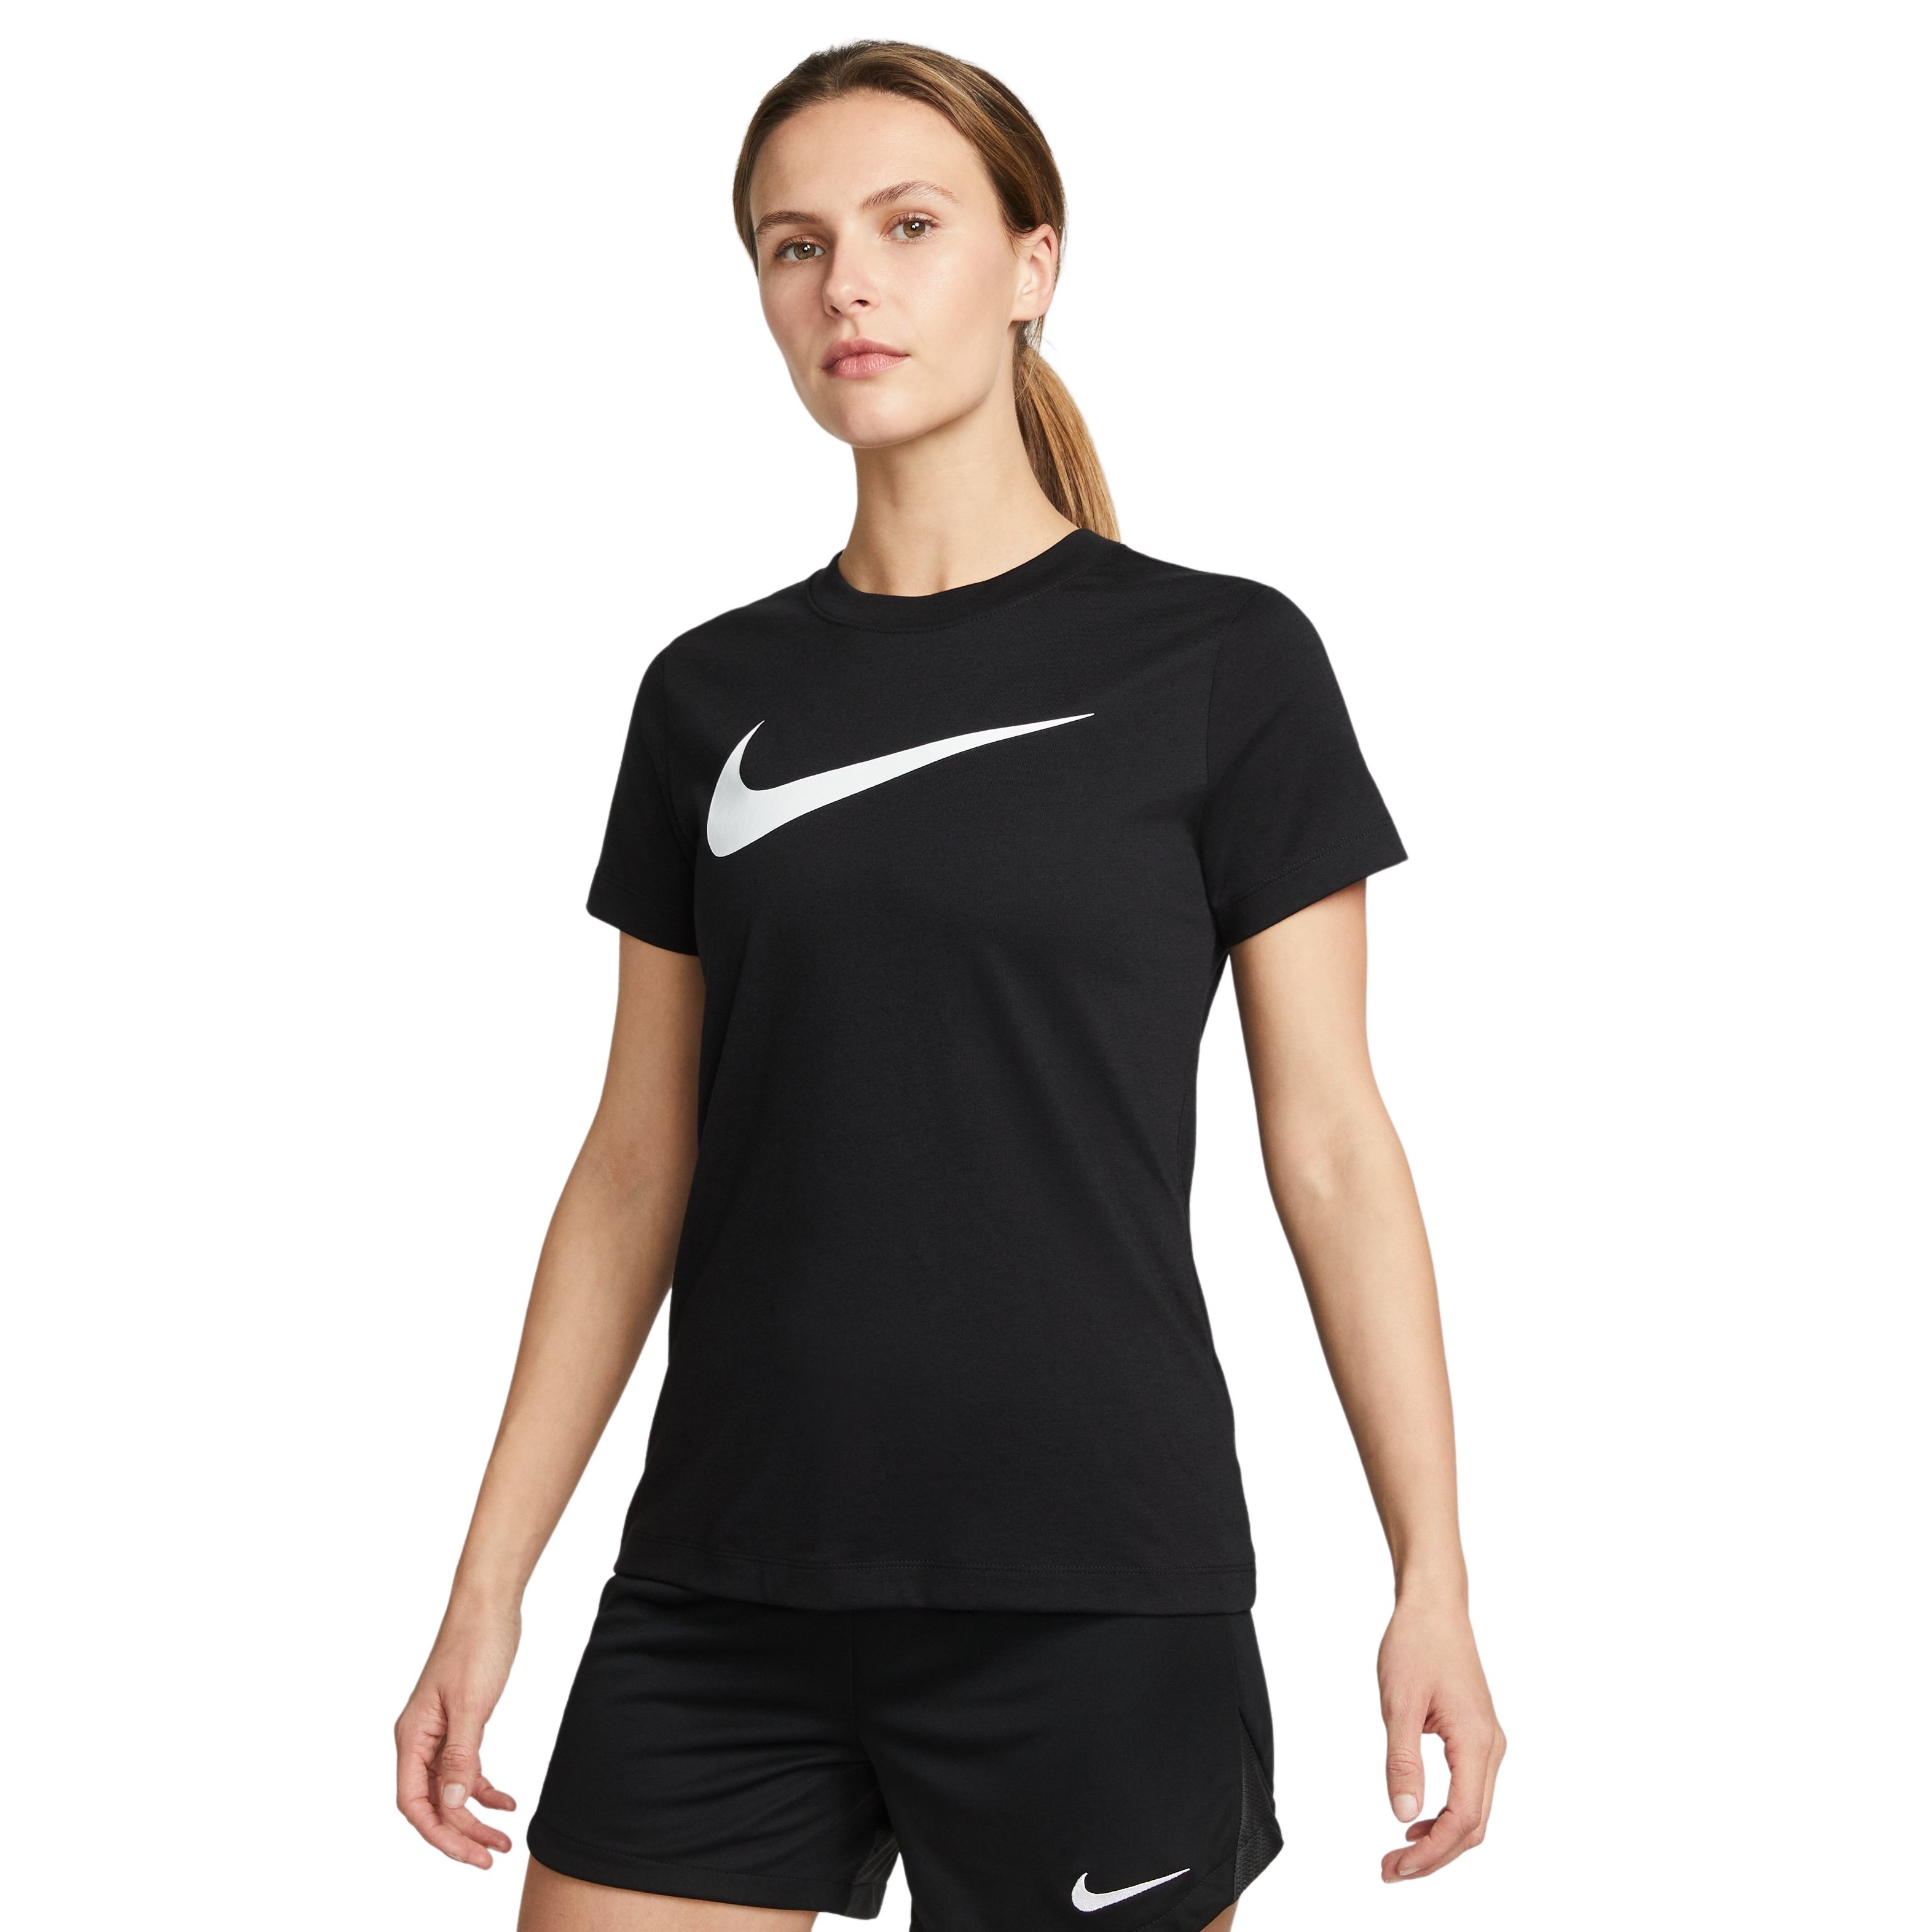 Nike Nike Park20 Dry Sportshirt - Maat XL  - Vrouwen - zwart - wit